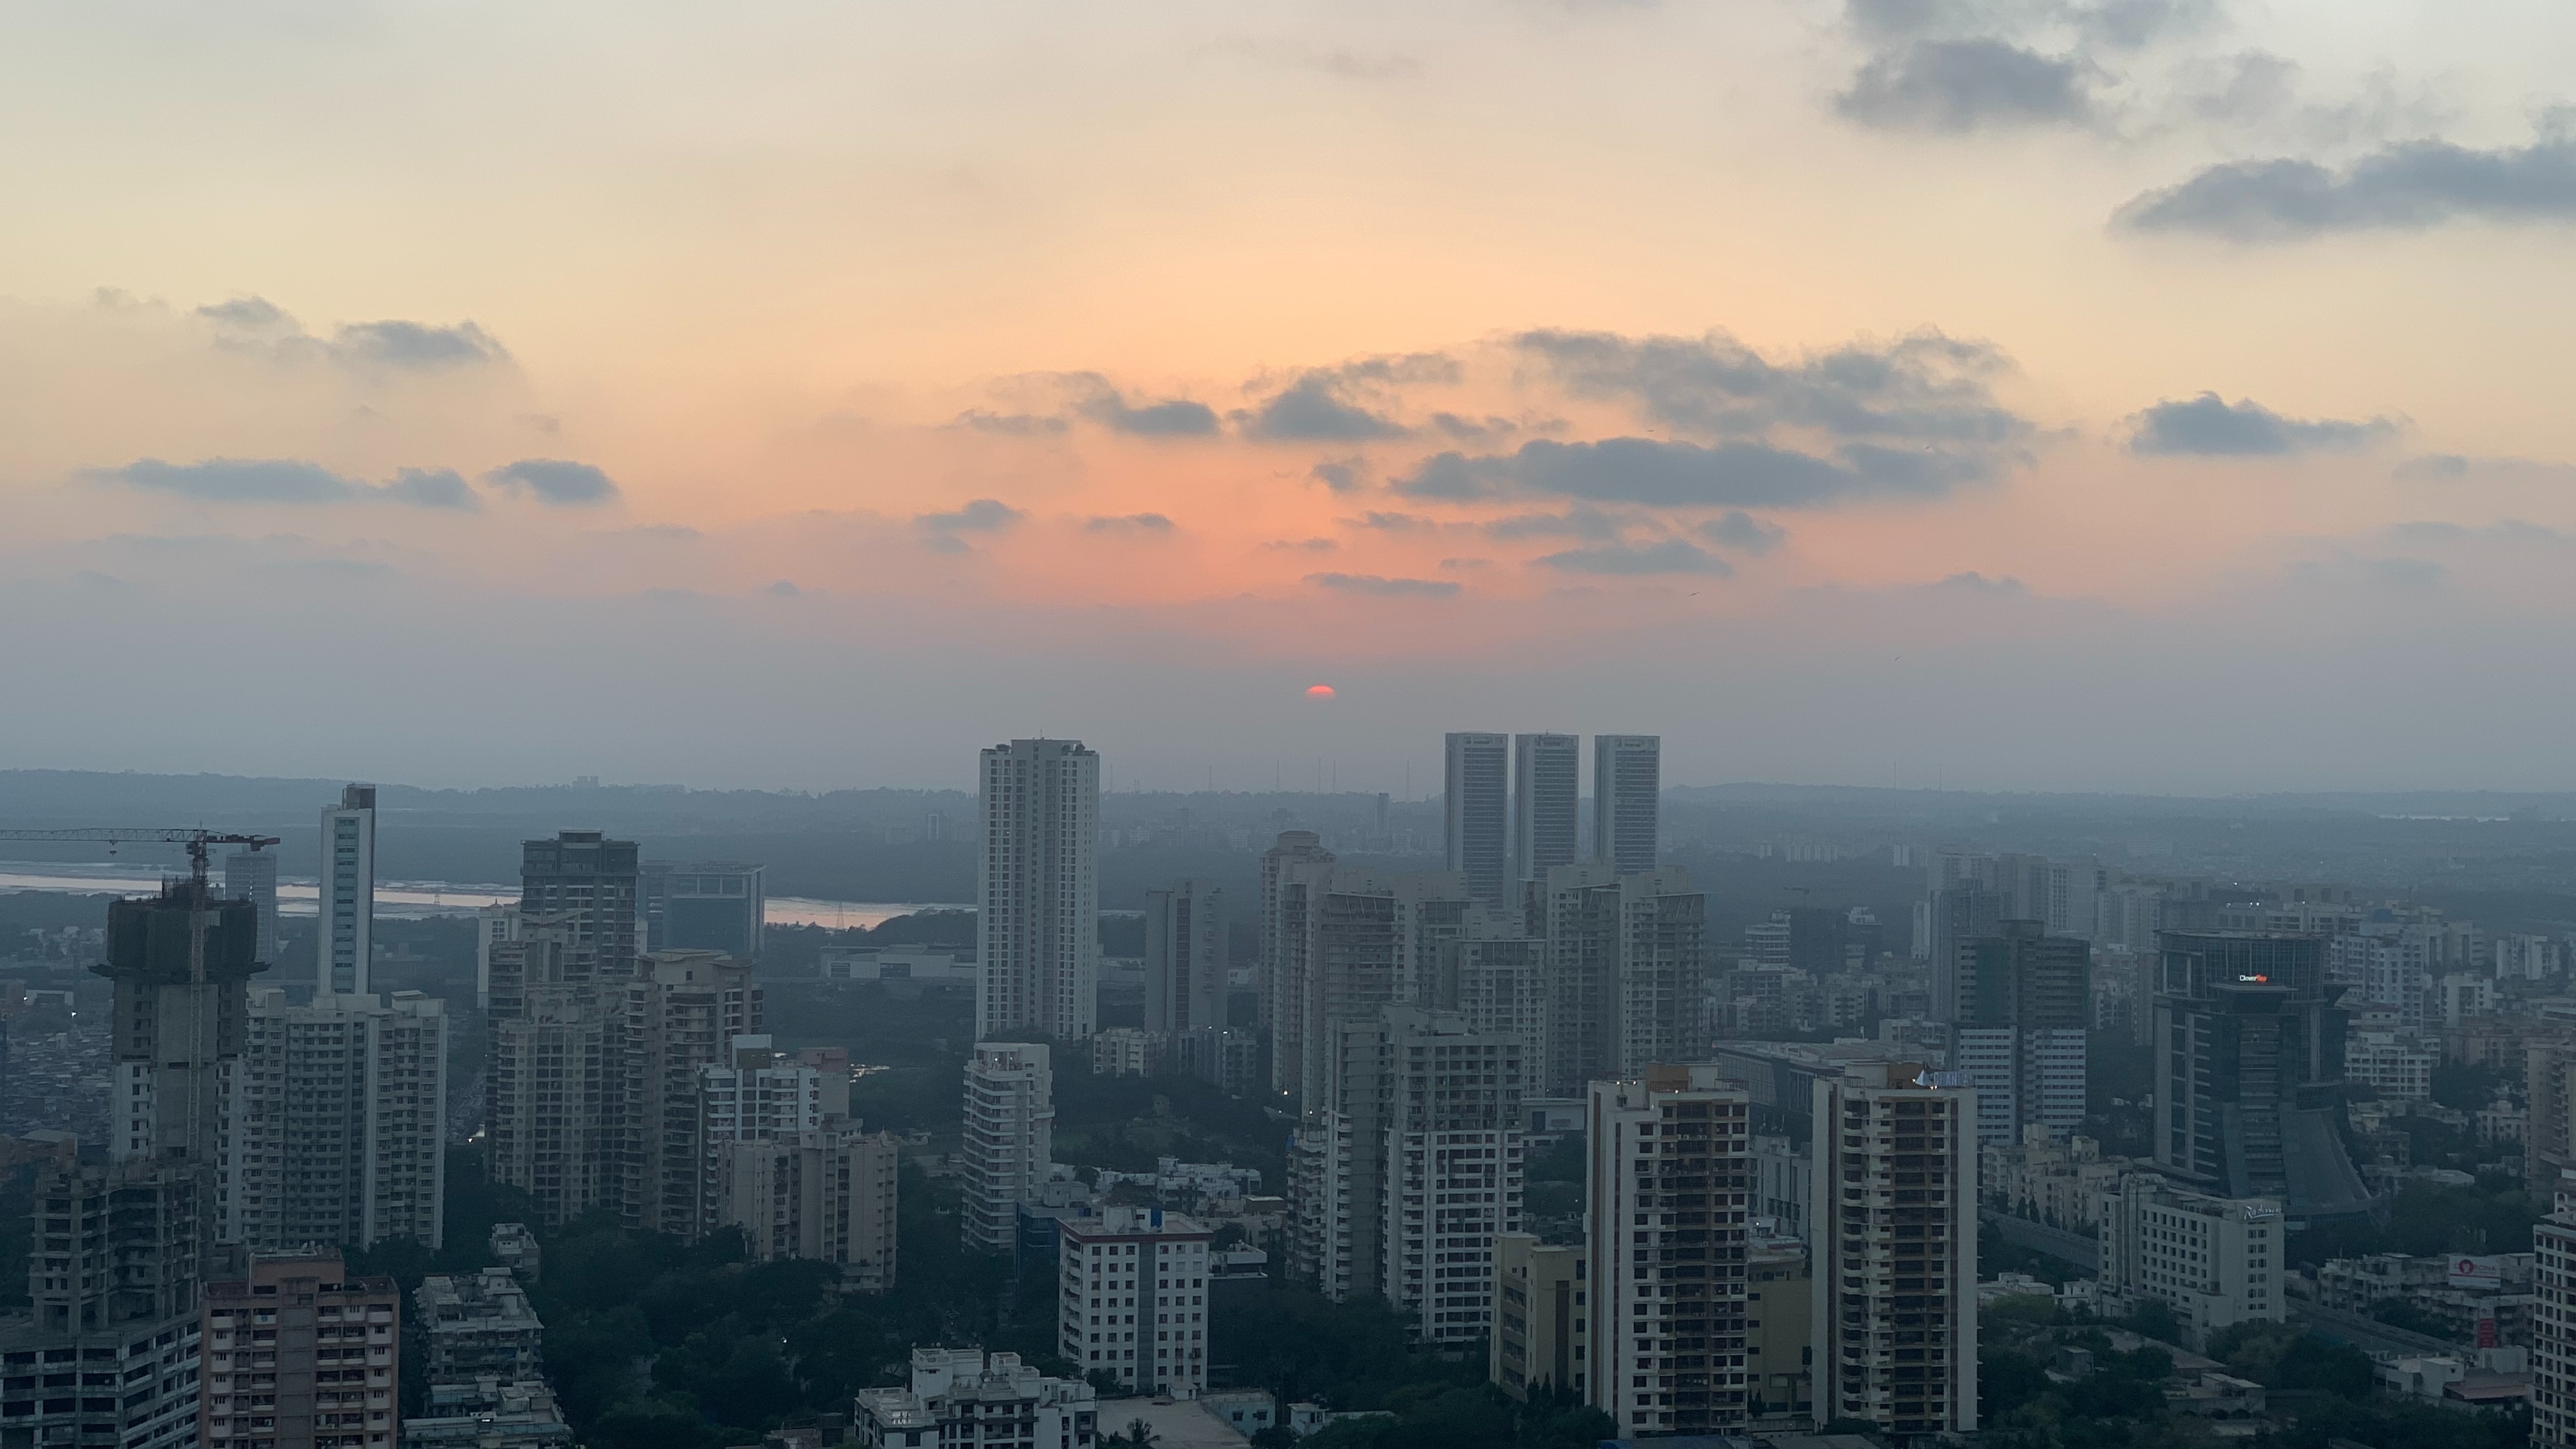 Greetings from Apollo Mumbai NESCO!